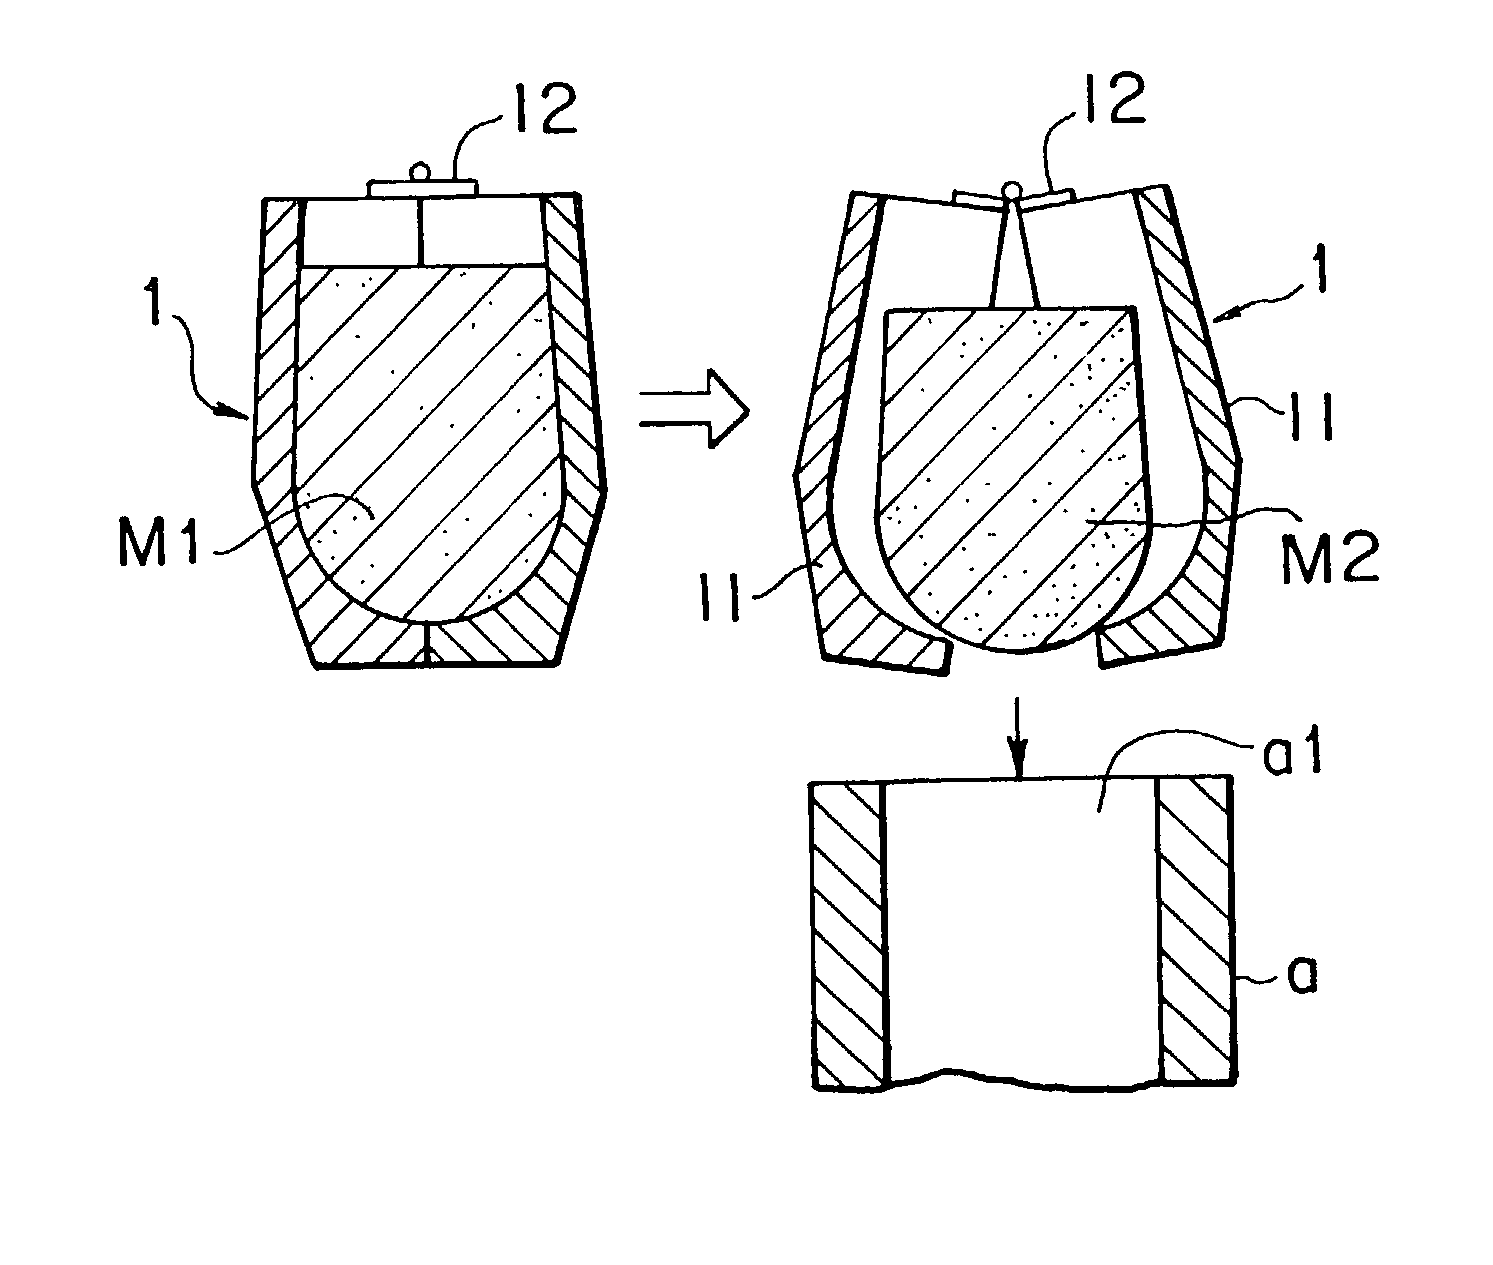 Method of producing semi-solid metal slurries